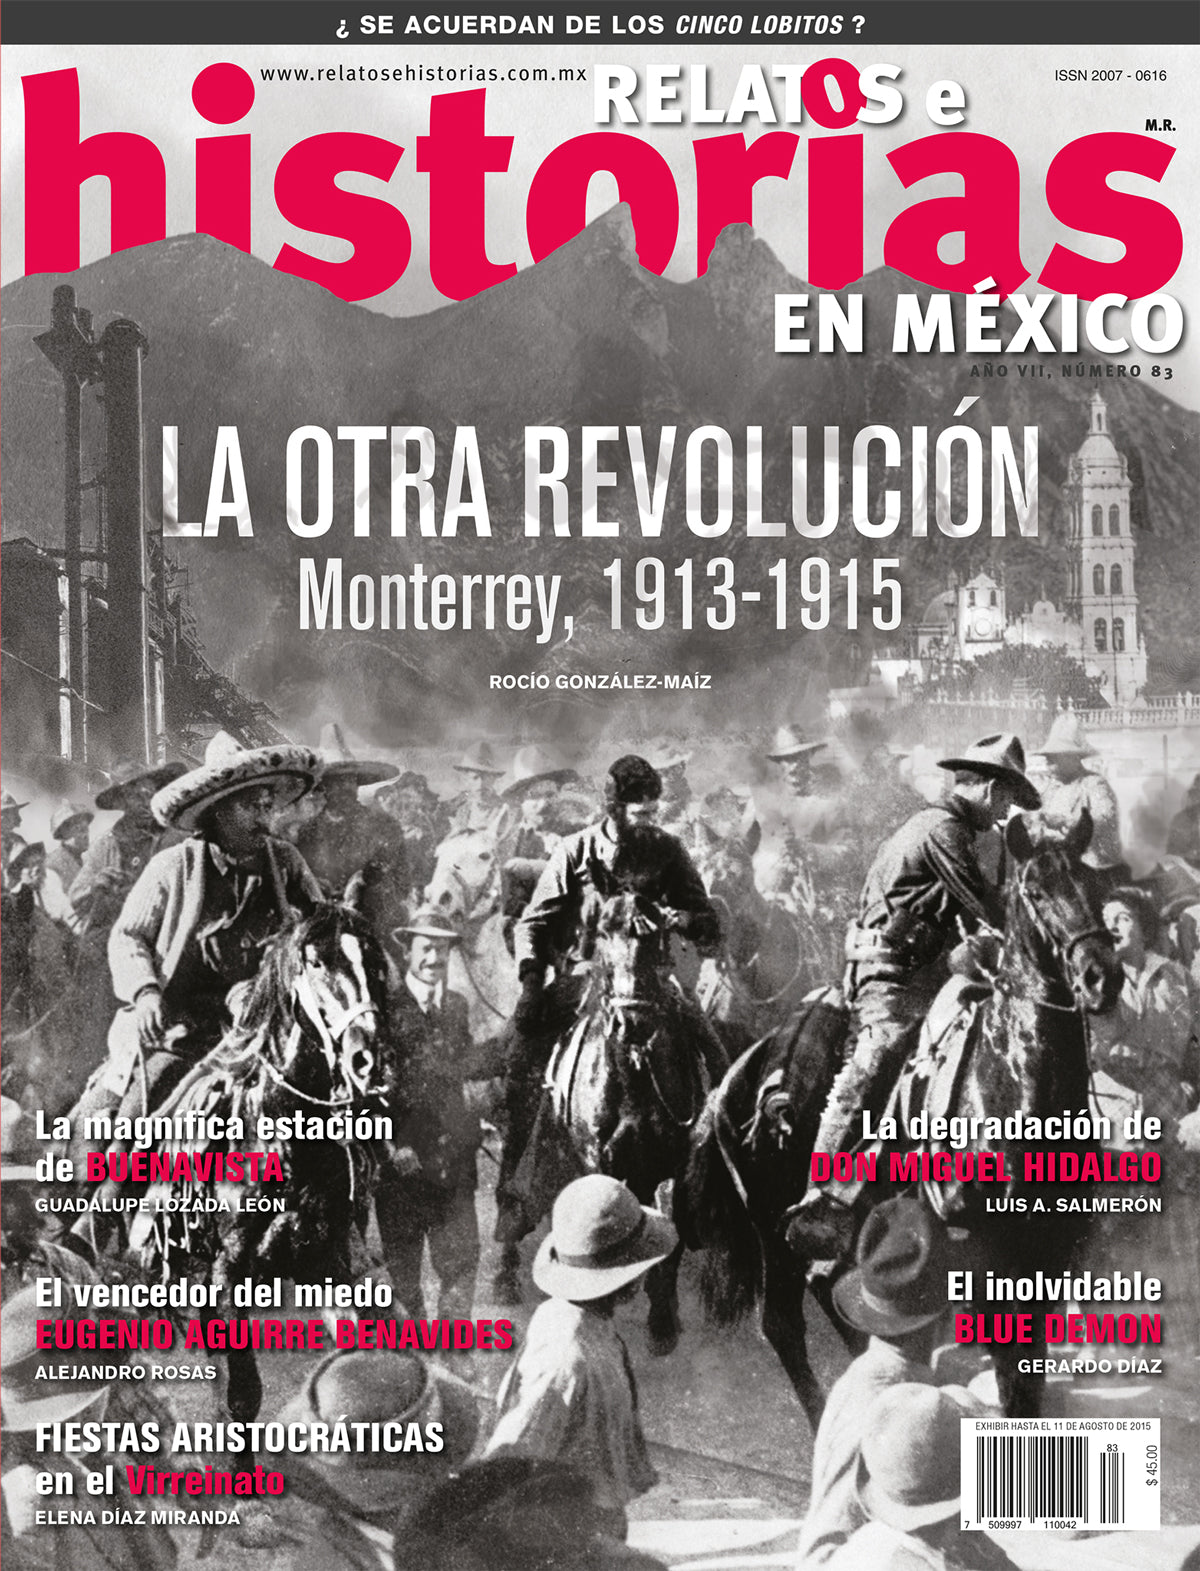 La otra Revolución. Monterrey, 1913-1915